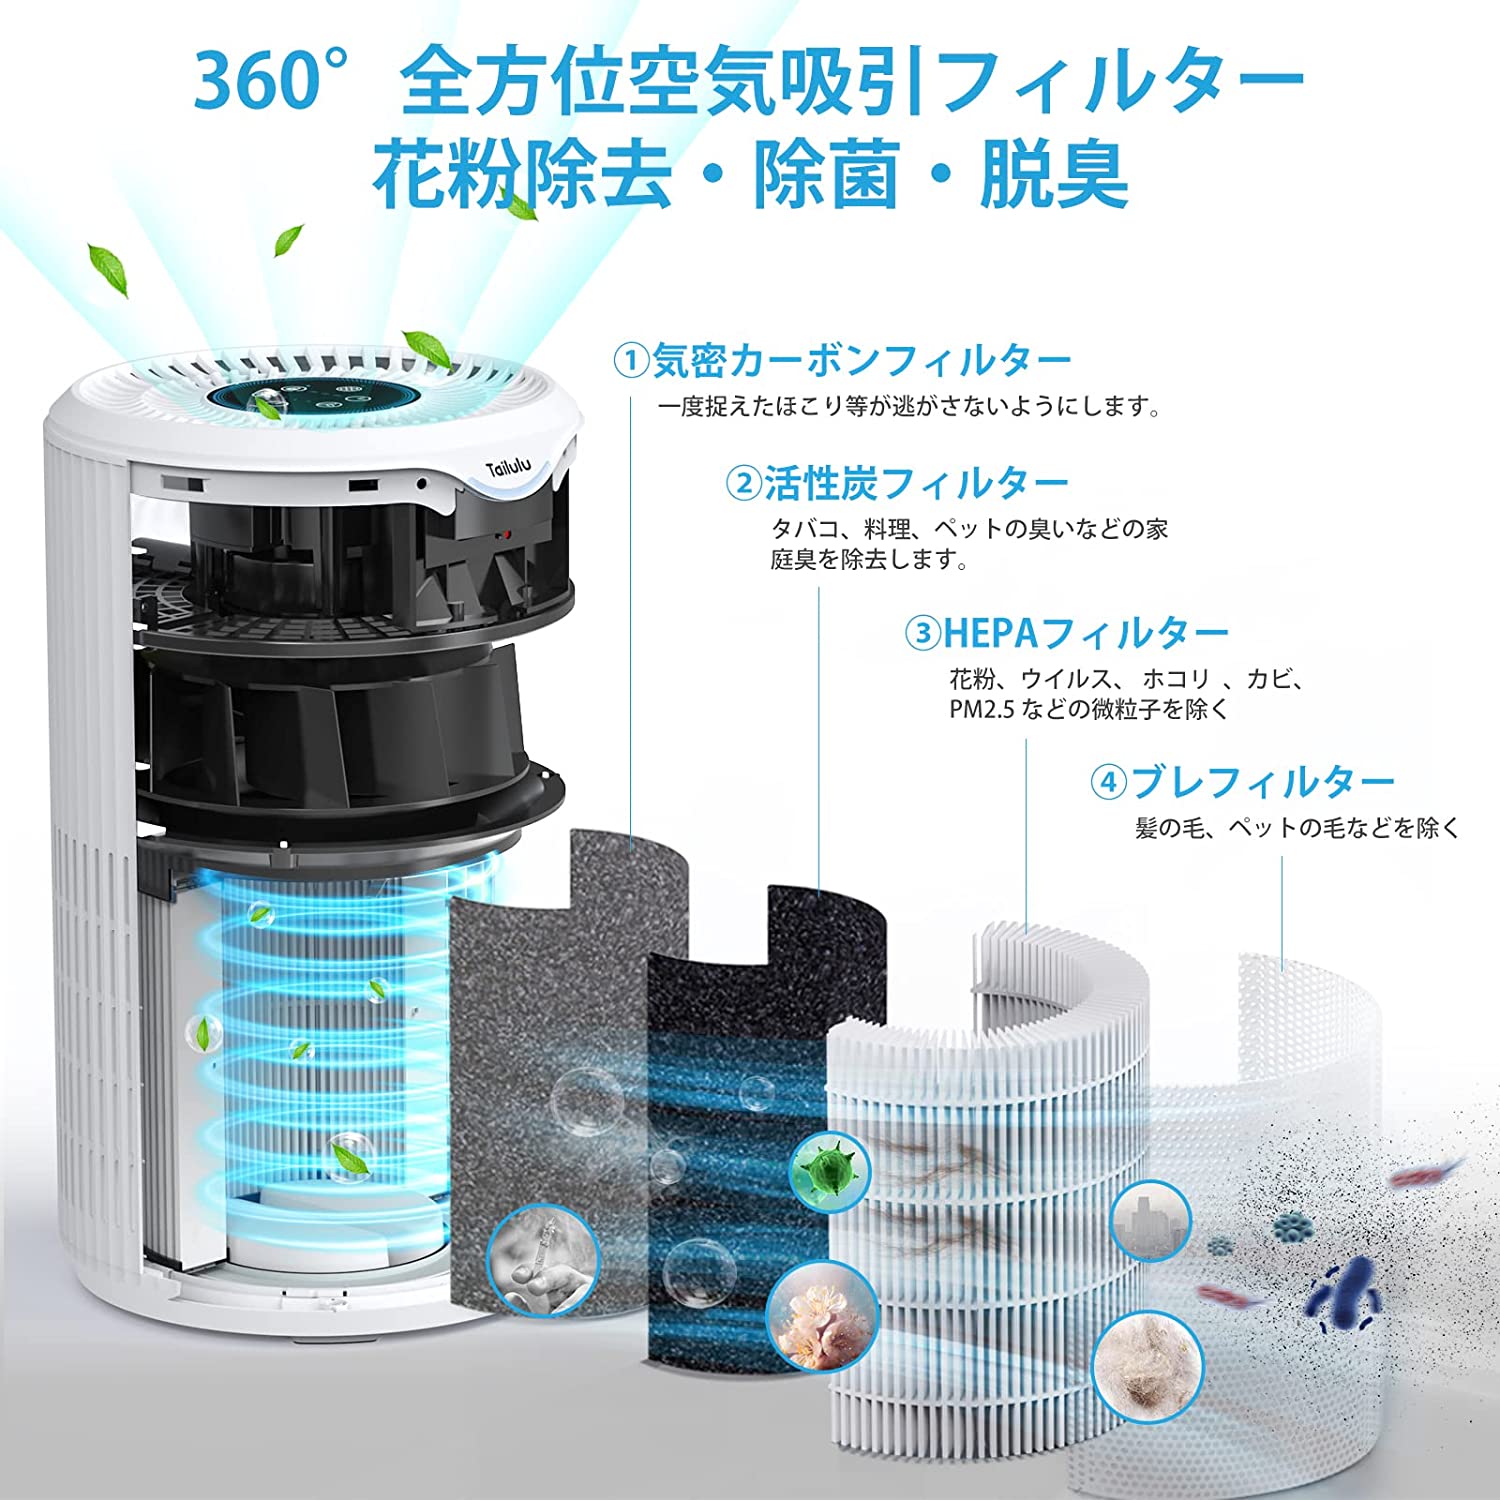 Liwehor 空気清浄機 花粉対策 集塵 15畳対応 - 空気清浄機・イオン発生器